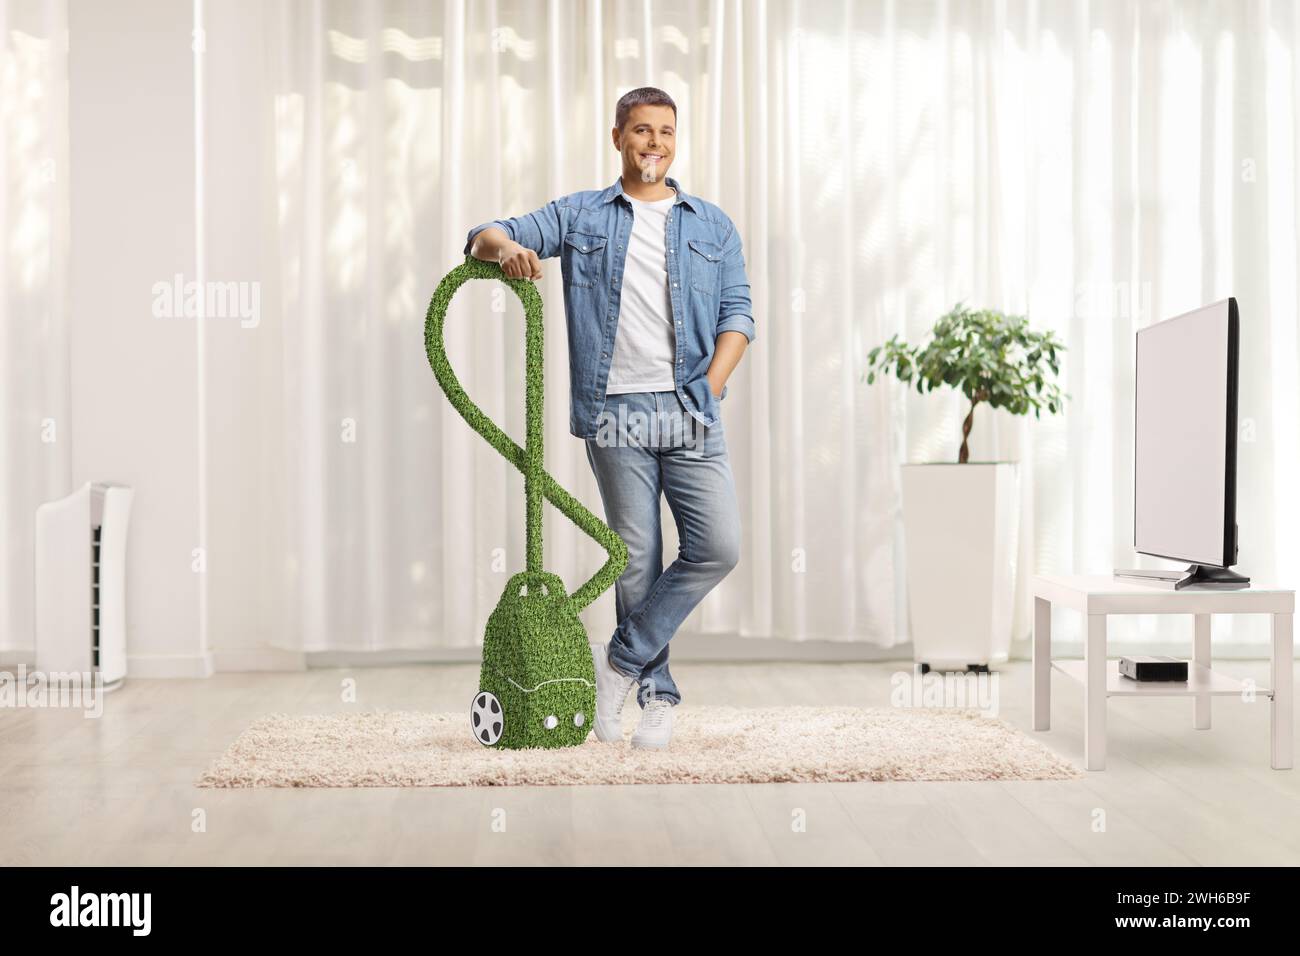 Mann mit einem umweltfreundlichen und effizienten Staubsauger, der zu Hause in einem Wohnzimmer steht Stockfoto